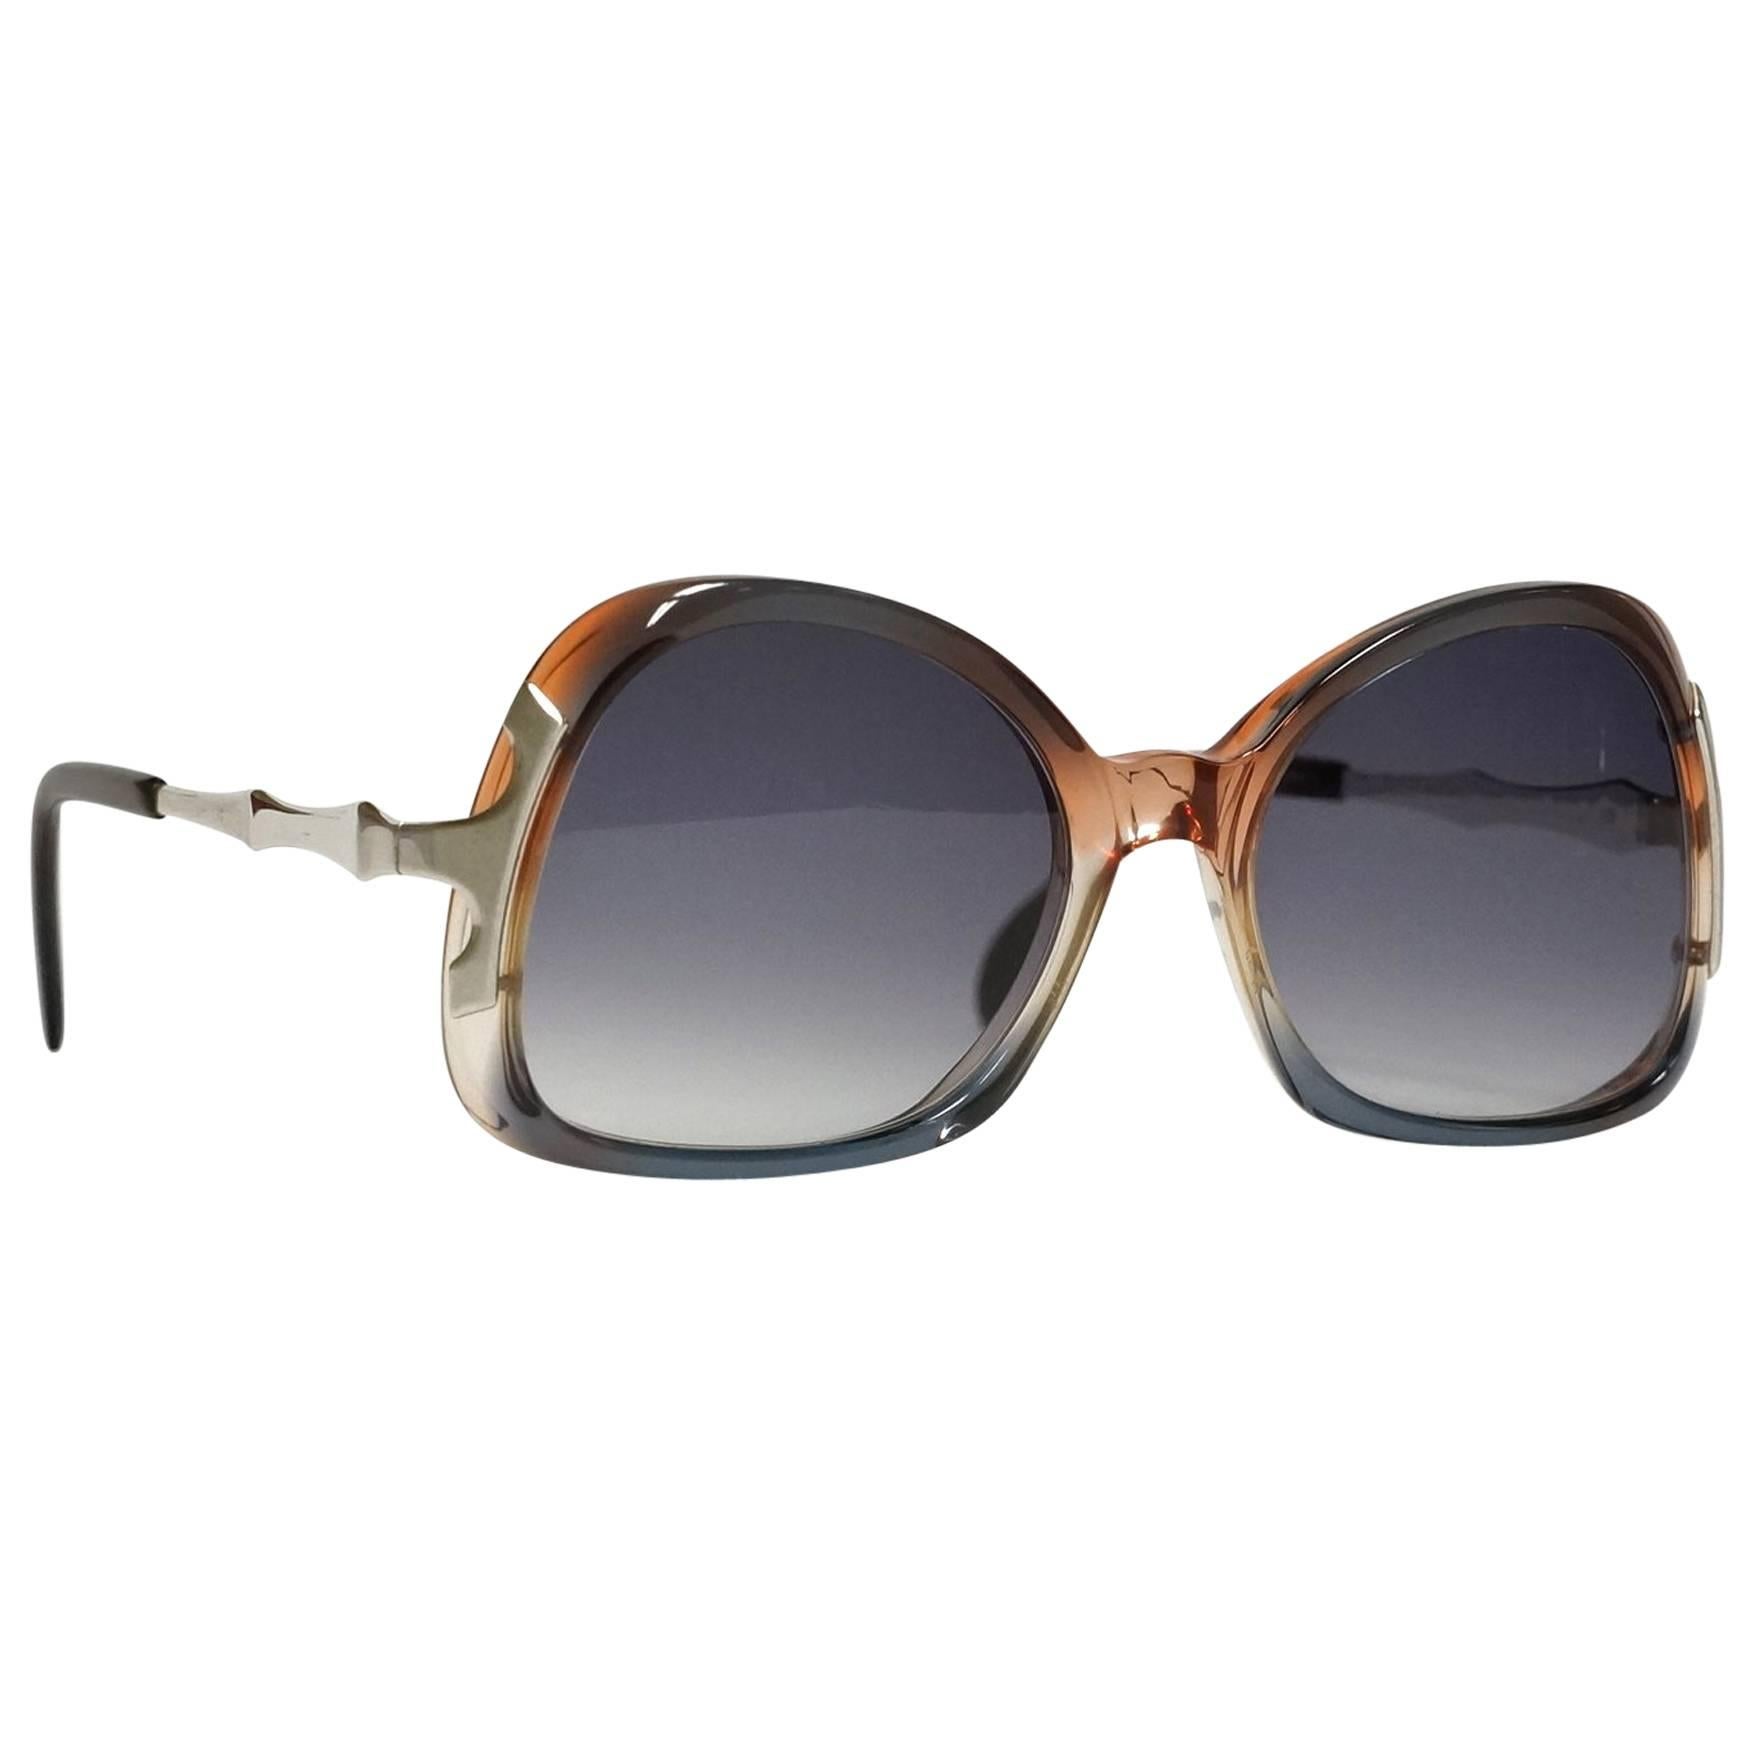 1980s Metzler Sunglasses For Sale